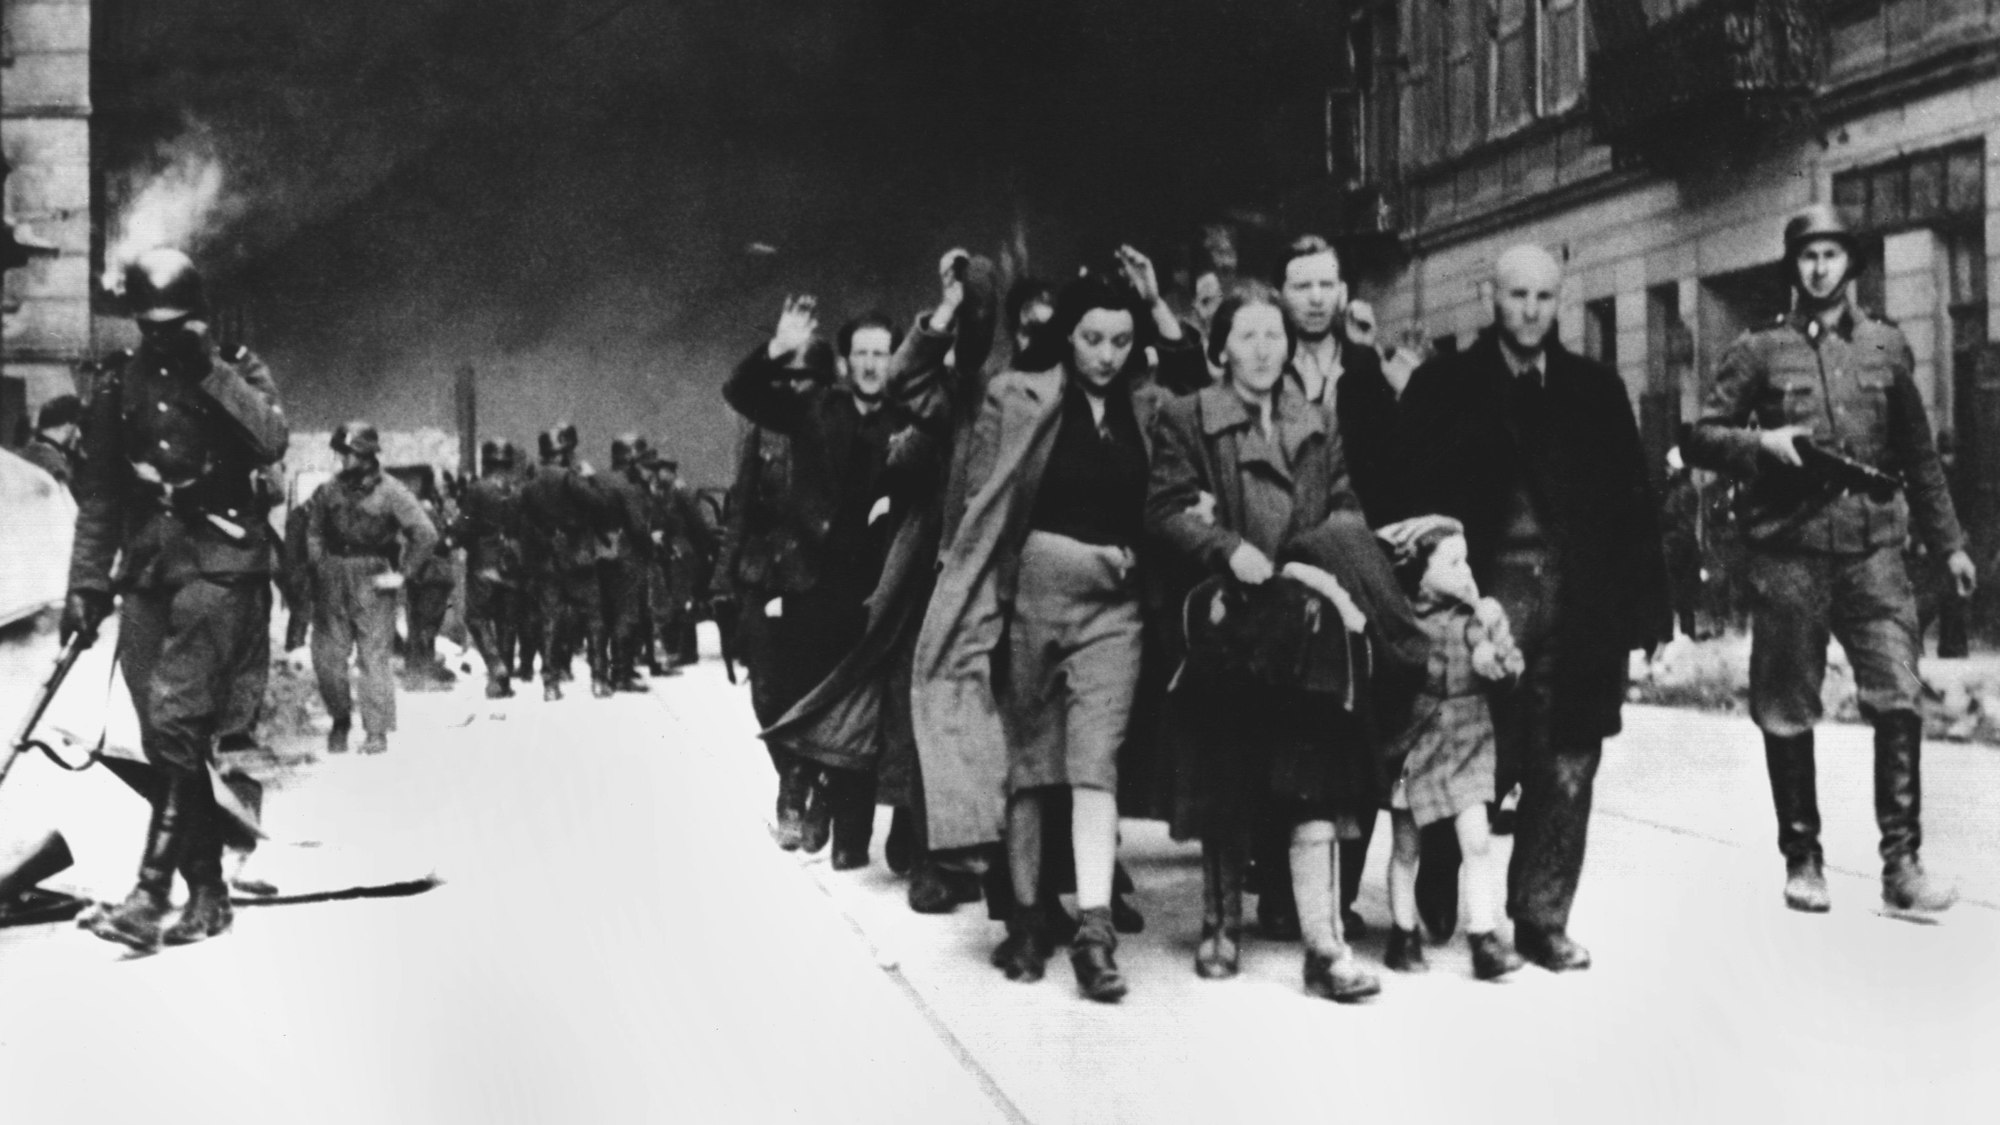 Mit erhobenen Händen werden im Mai 1943 jüdische Frauen, Männer und Kinder von deutschen SS-Soldaten aus dem brennenden Ghetto der polnischen Hauptstadt Warschau getrieben. Die Aufnahme entstand in der letzten Phase des Ersten Warschauer Aufstandes, der vom 19. April 1943 bis zu seiner blutigen Niederschlagung am 16. Mai 1943 dauerte.